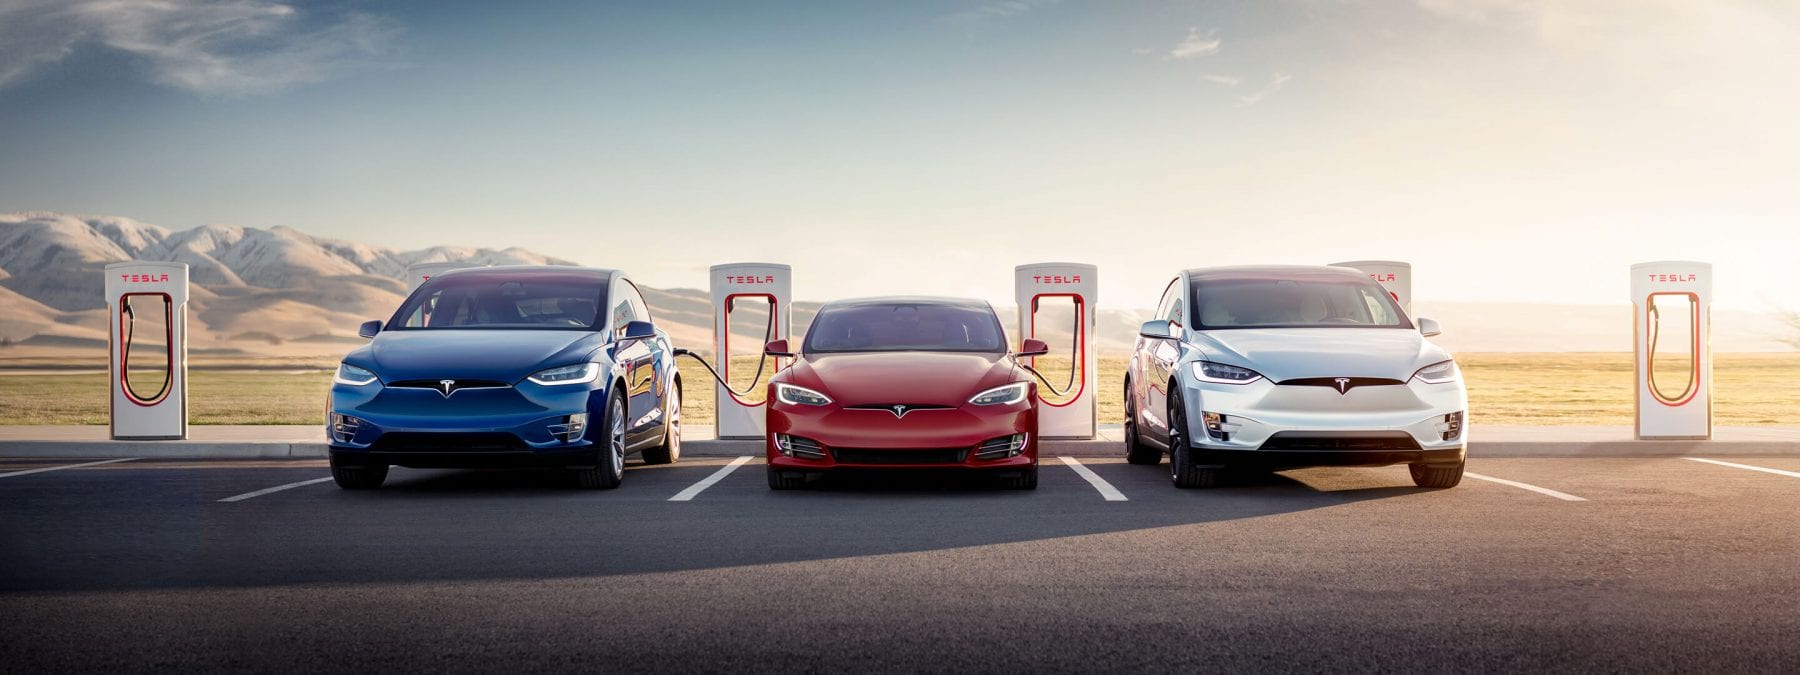 Tesla's Charging